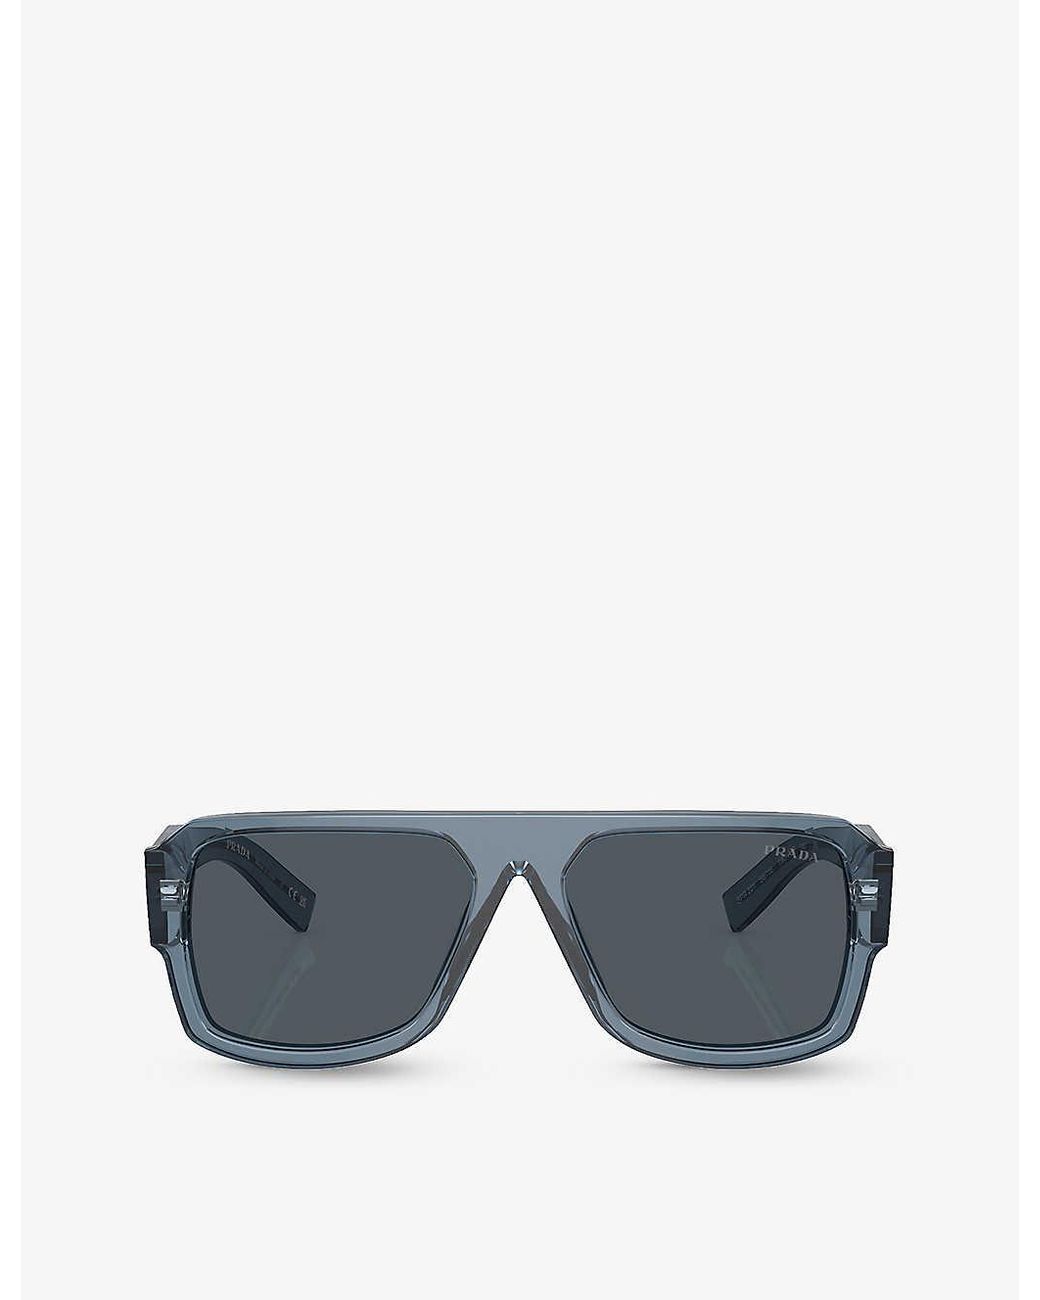 PRADA - PR08O square-frame sunglasses | Selfridges.com